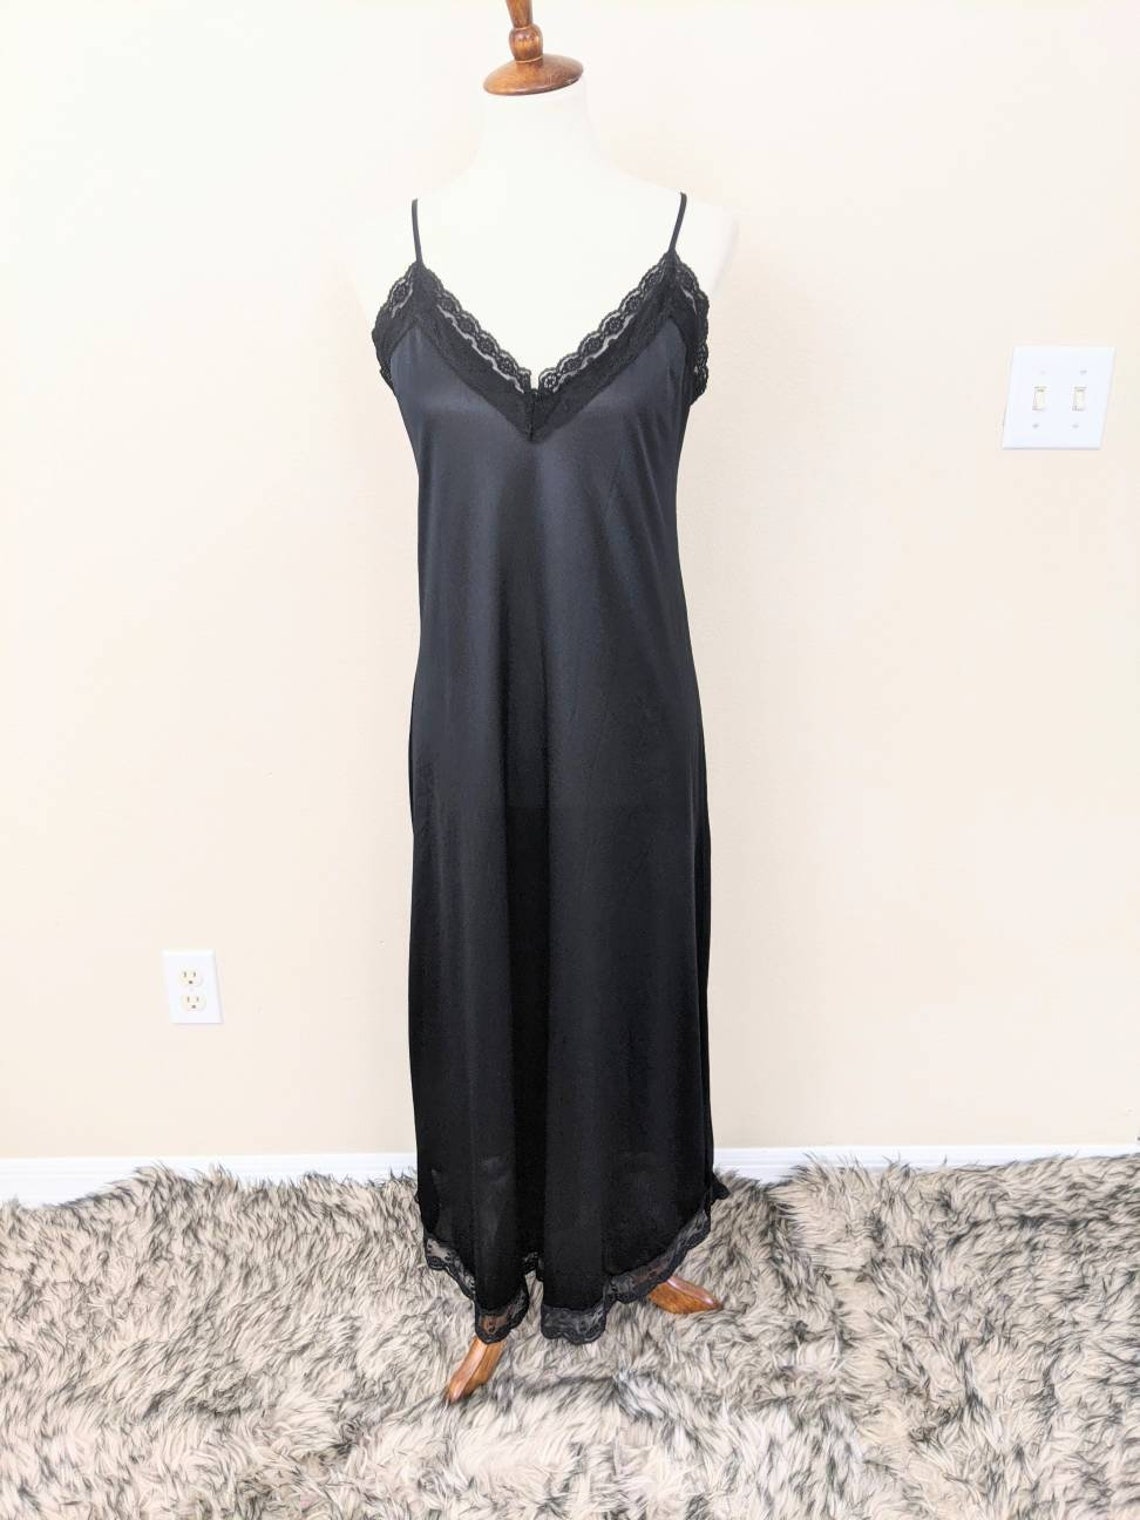 Full Slip Black Nylon Lace Underdress Gift for Her | Etsy